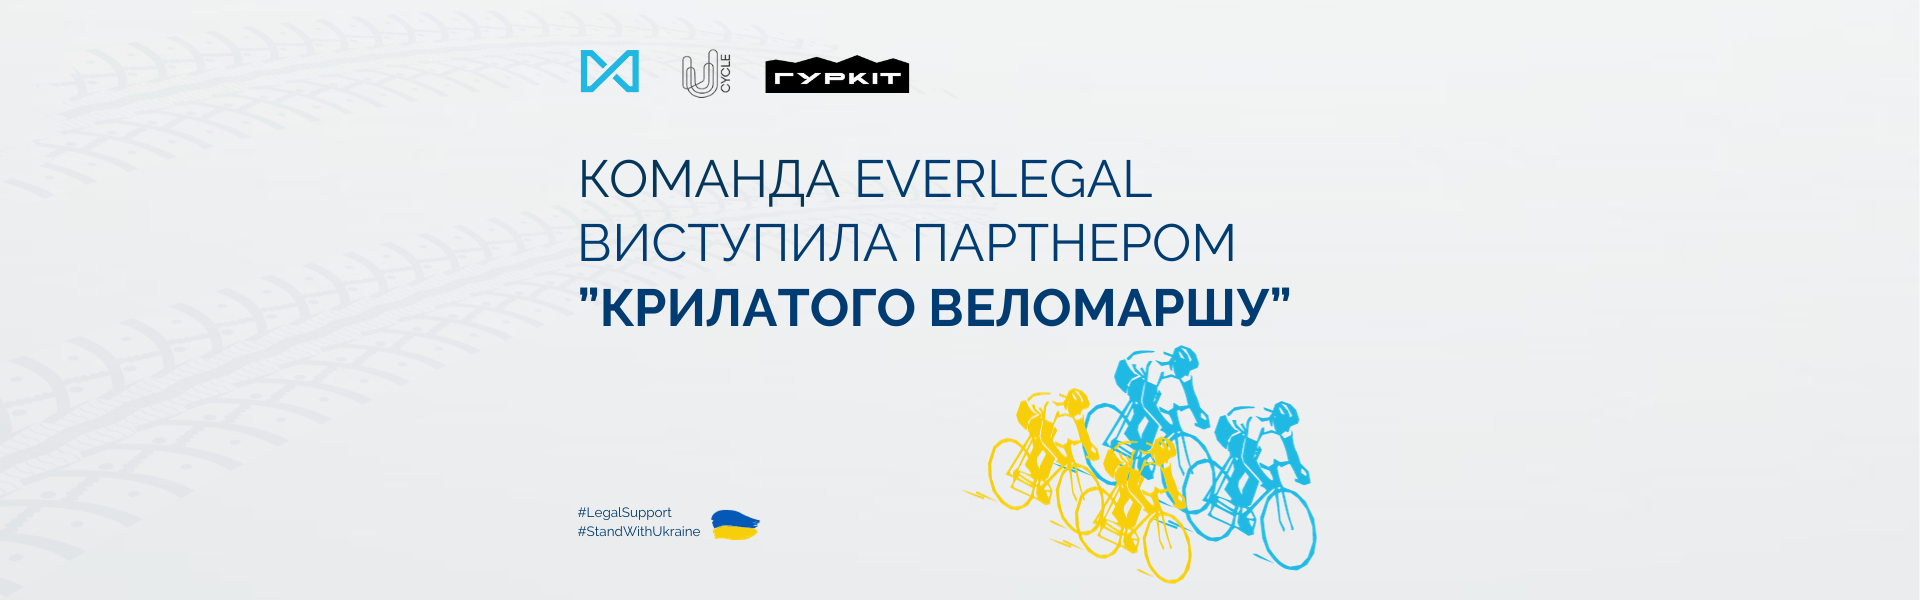 Команда EVERLEGAL виступила партнером ініціативи “Крилатий веломарш” у Києві